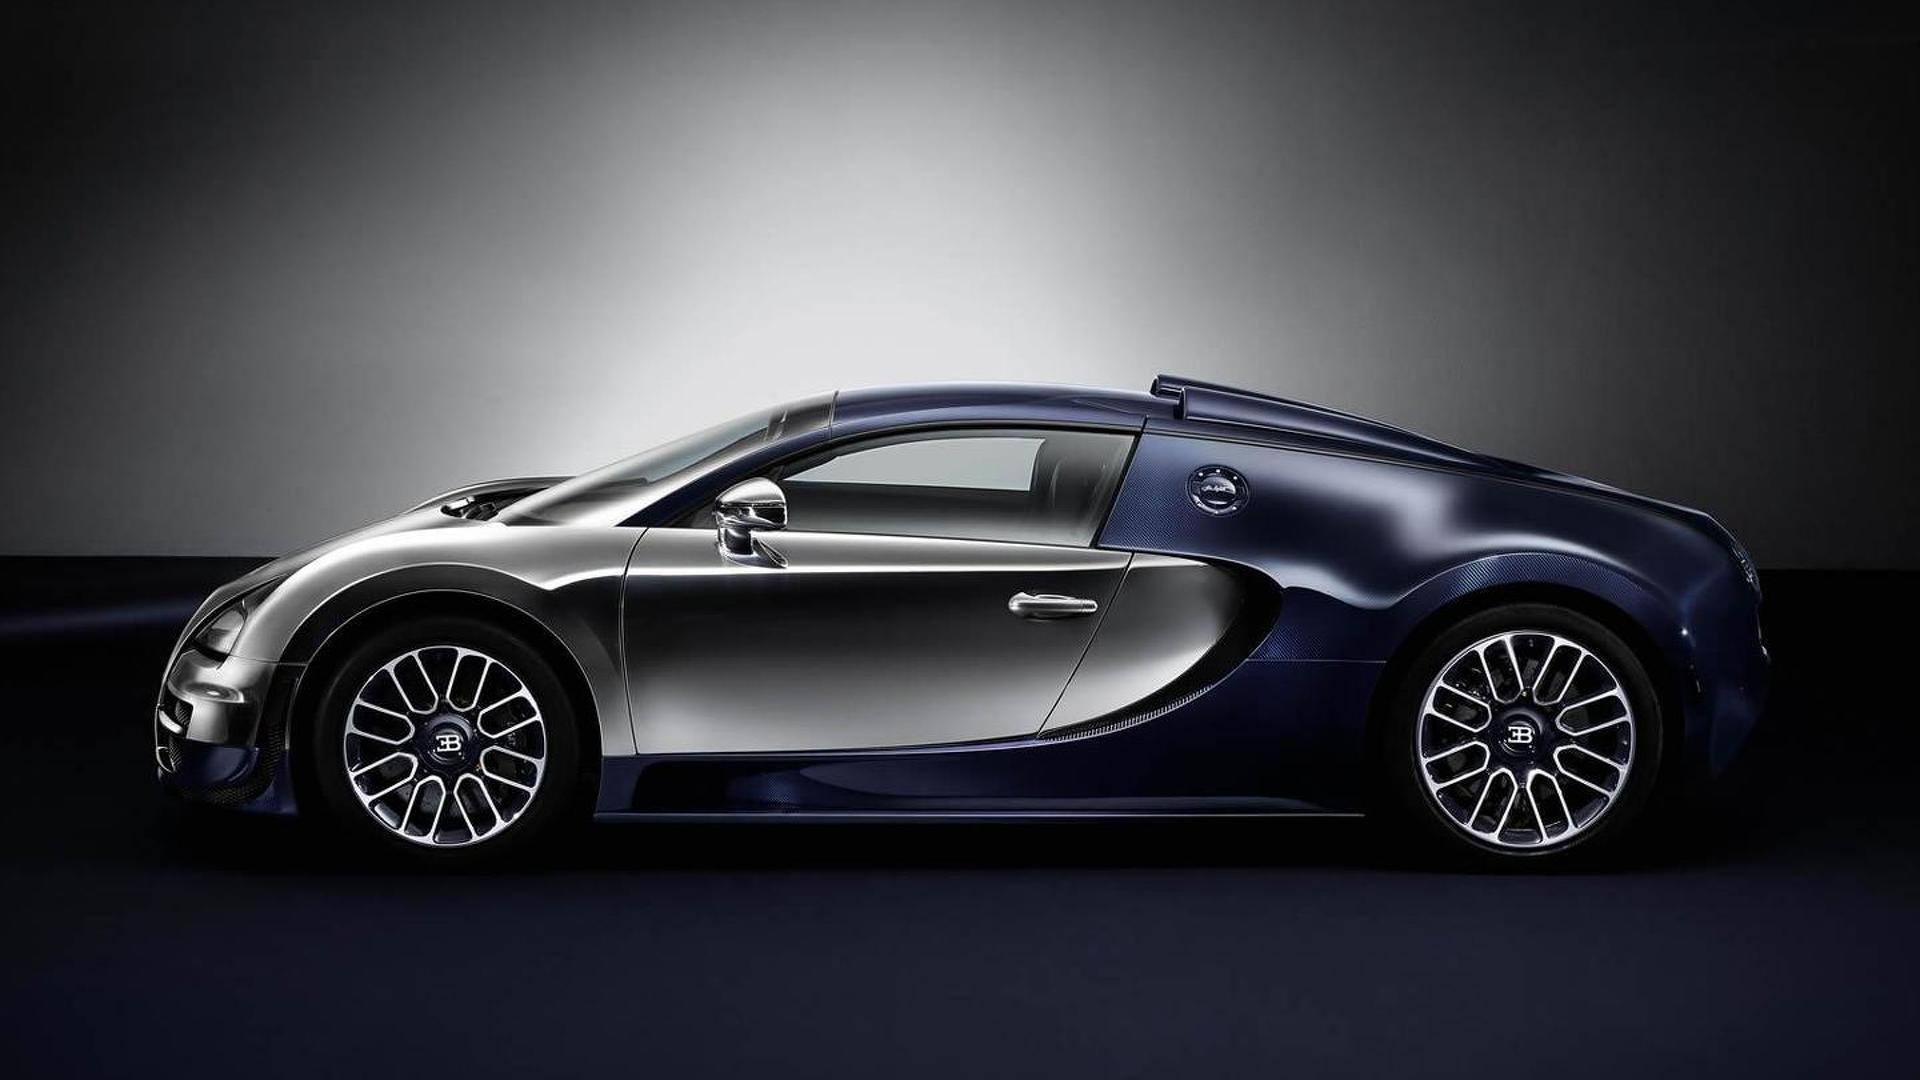 Bugatti Veyron Grand Sport Vitesse ‘Ettore Bugatti’ Edition